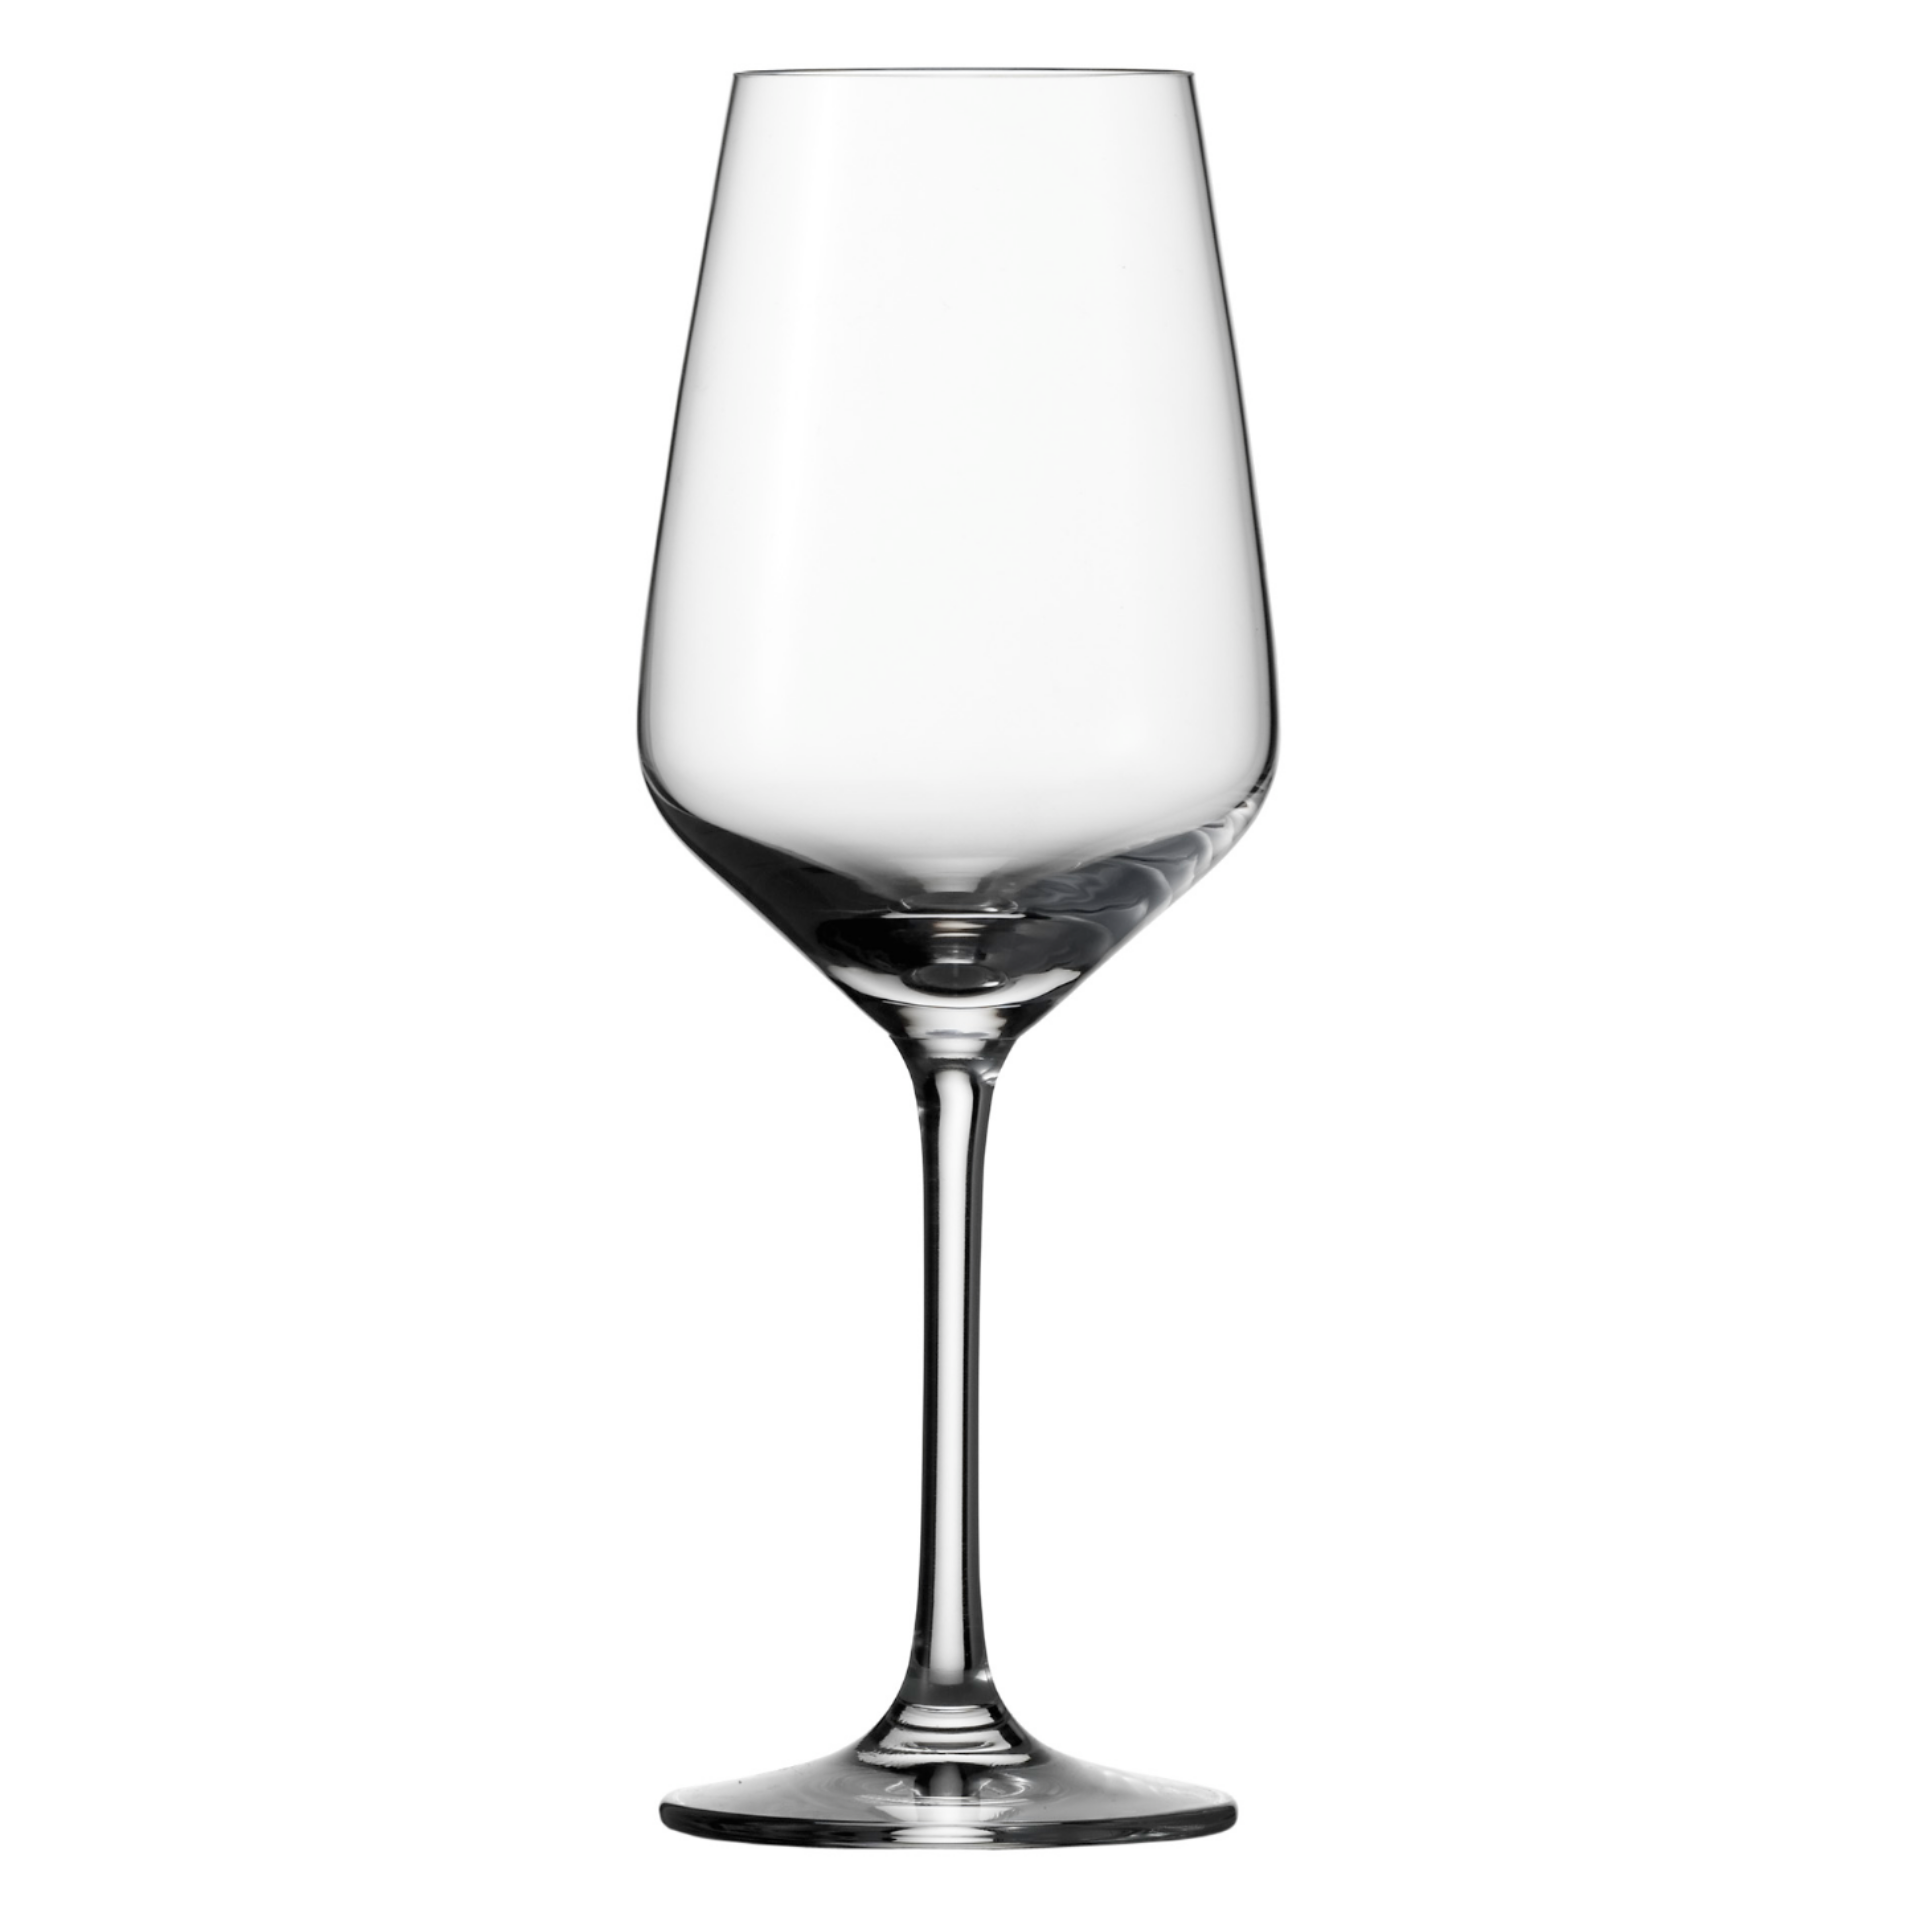 Verheugen mode burgemeester Schott Zwiesel Taste Witte wijnglas 0.36 Ltr (€ 5.75 per stuk) –  Viervriendenwijn